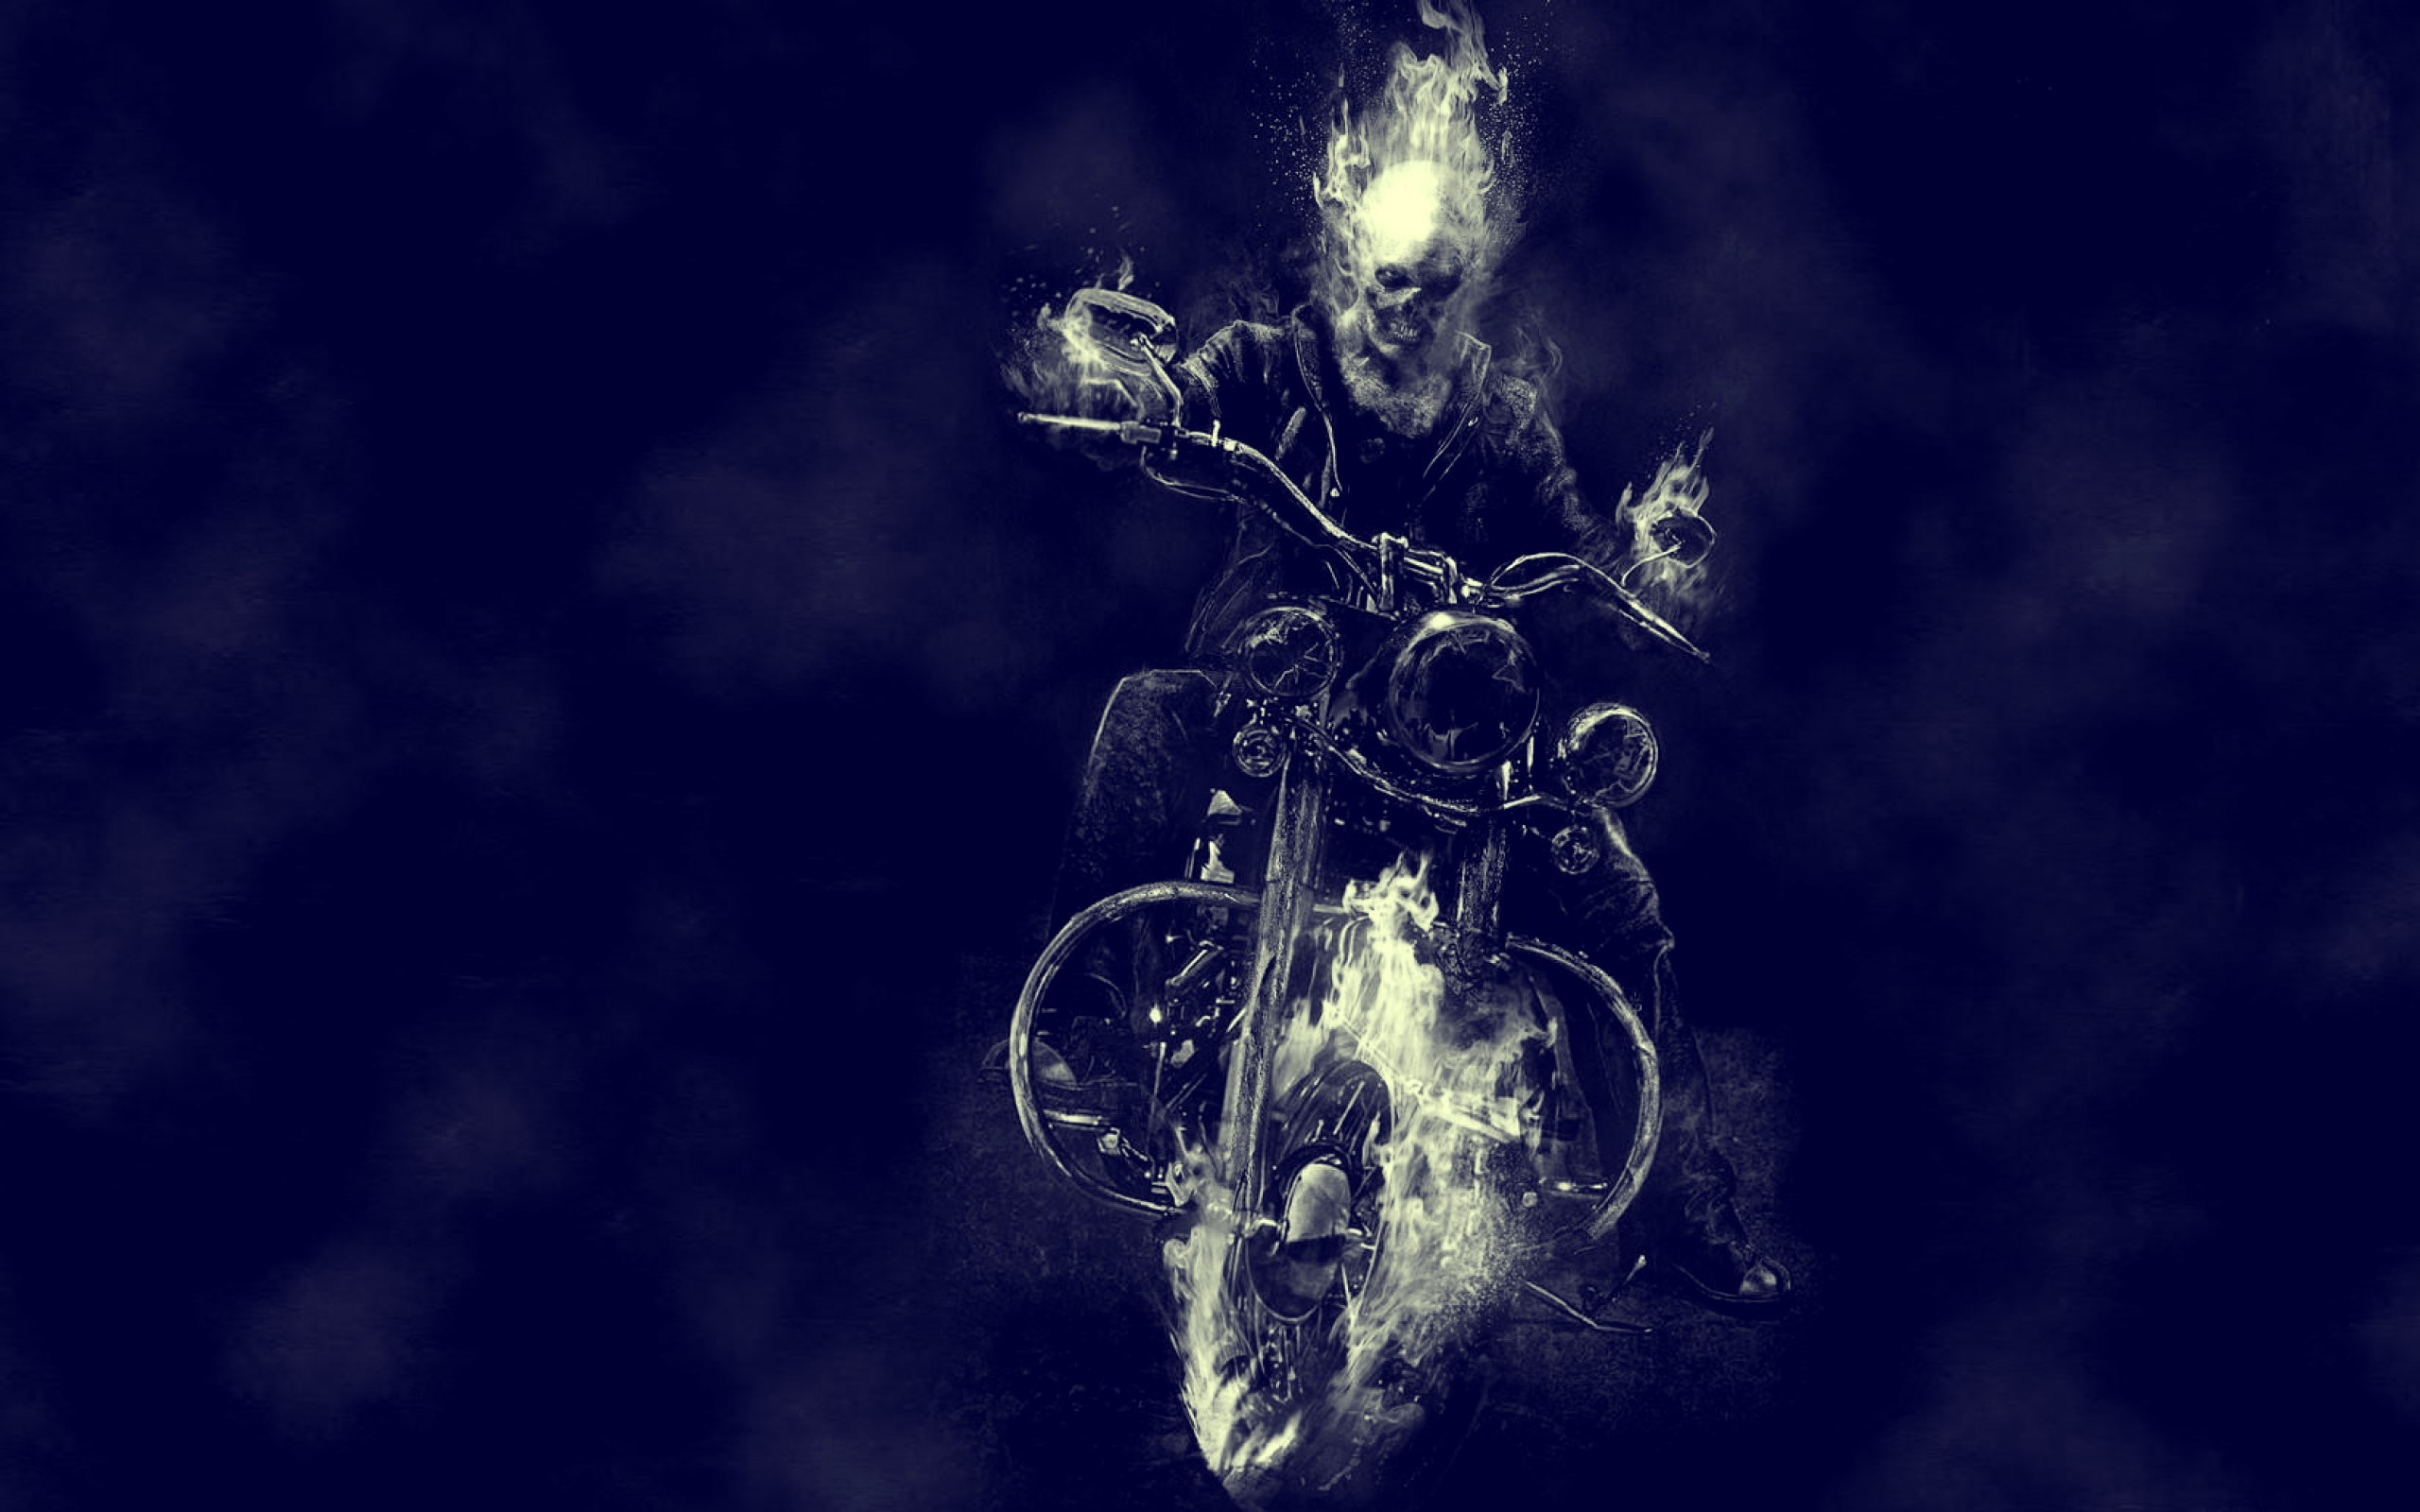 Ghost rider movie bike motorcycle skull wallpaper best hd wallpapers